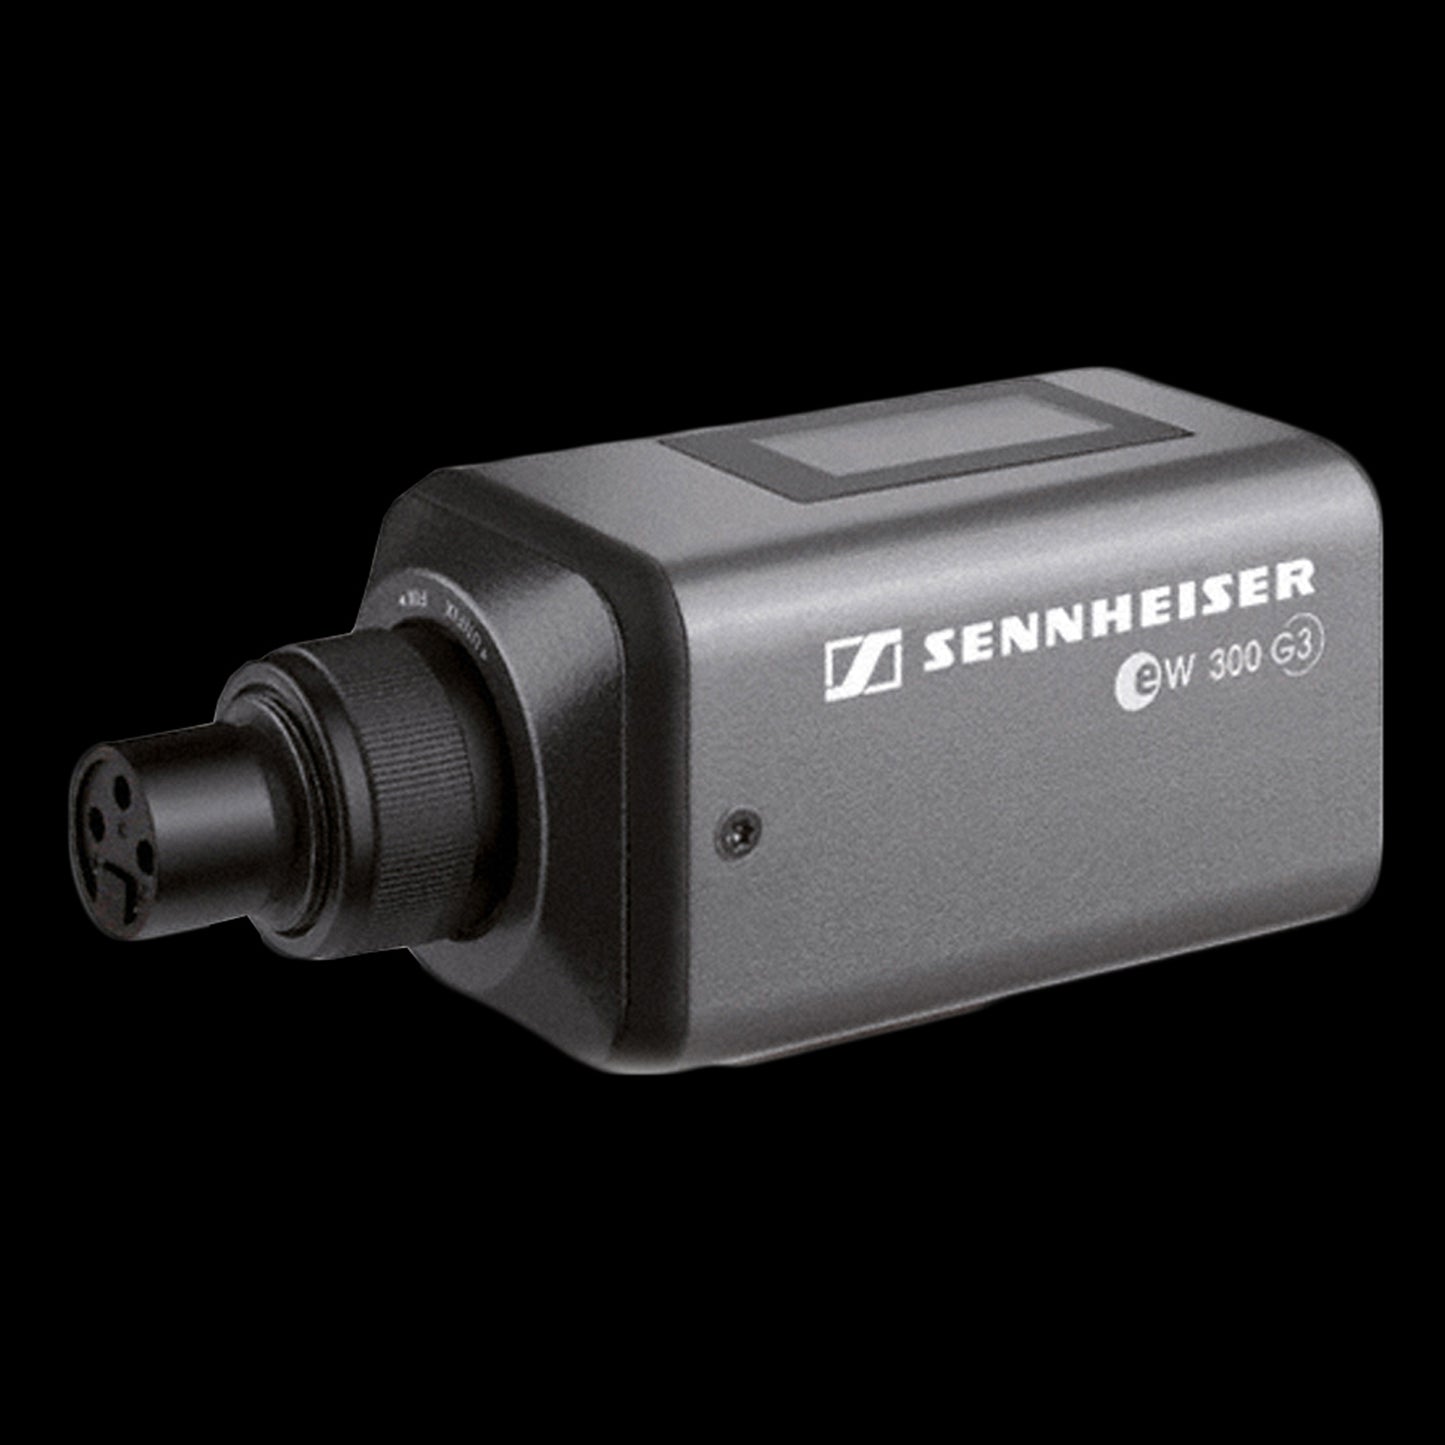 Sennheiser SKP 100 G3 G Plug In Transmitter